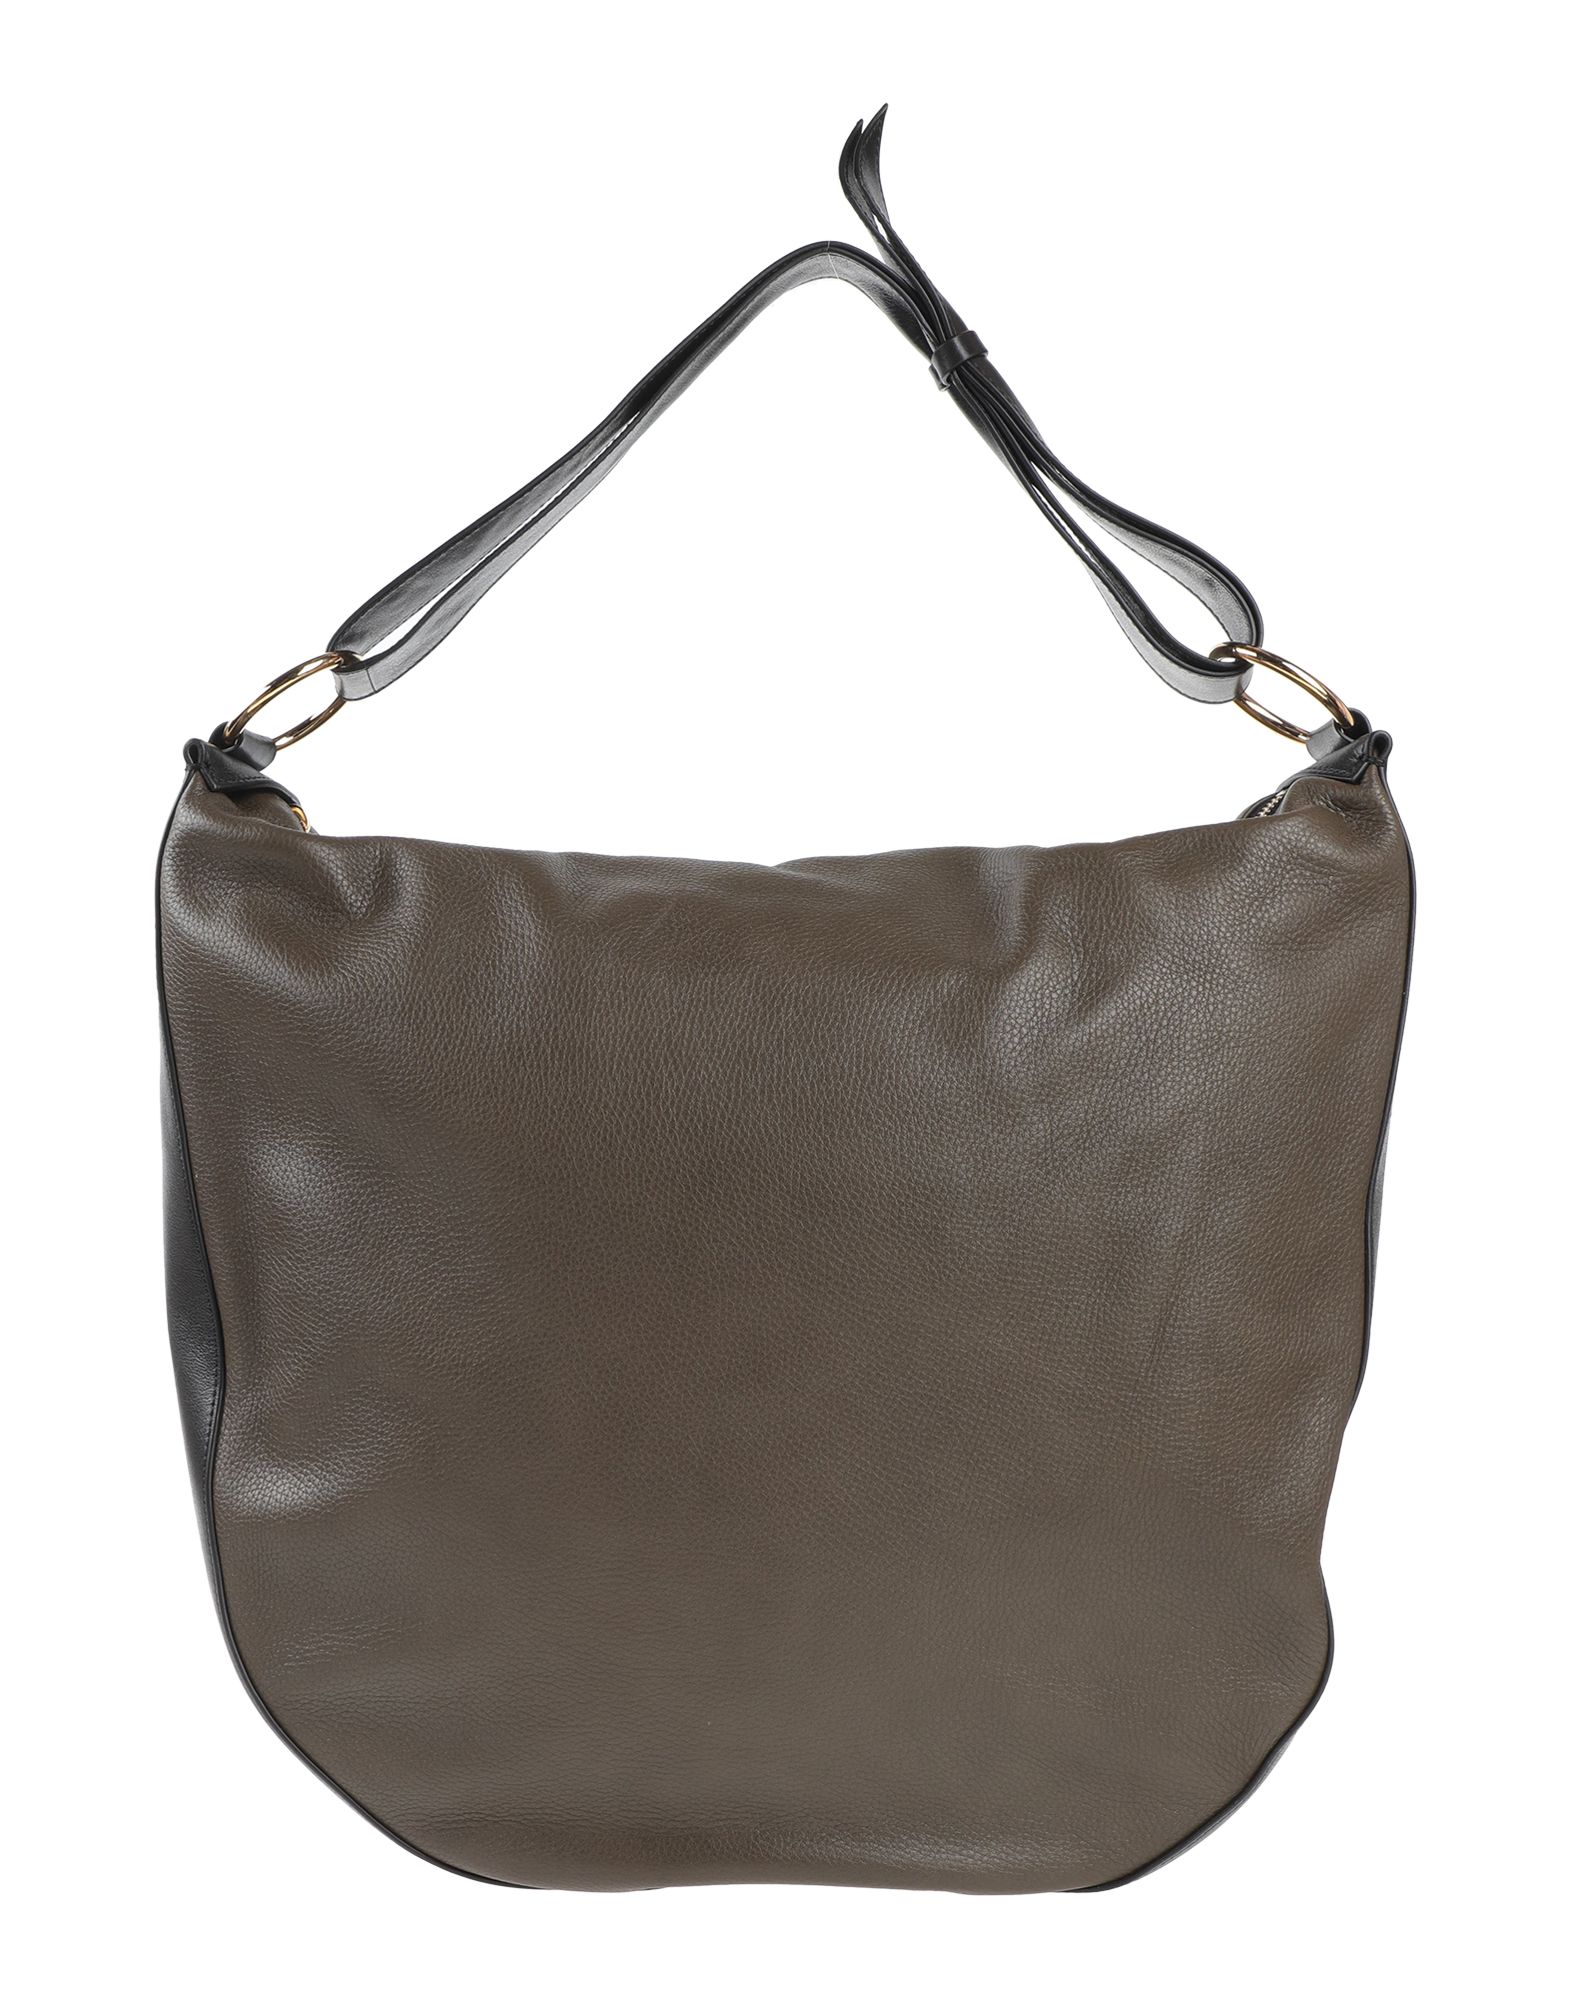 MARNI Handbags - Item 45519430